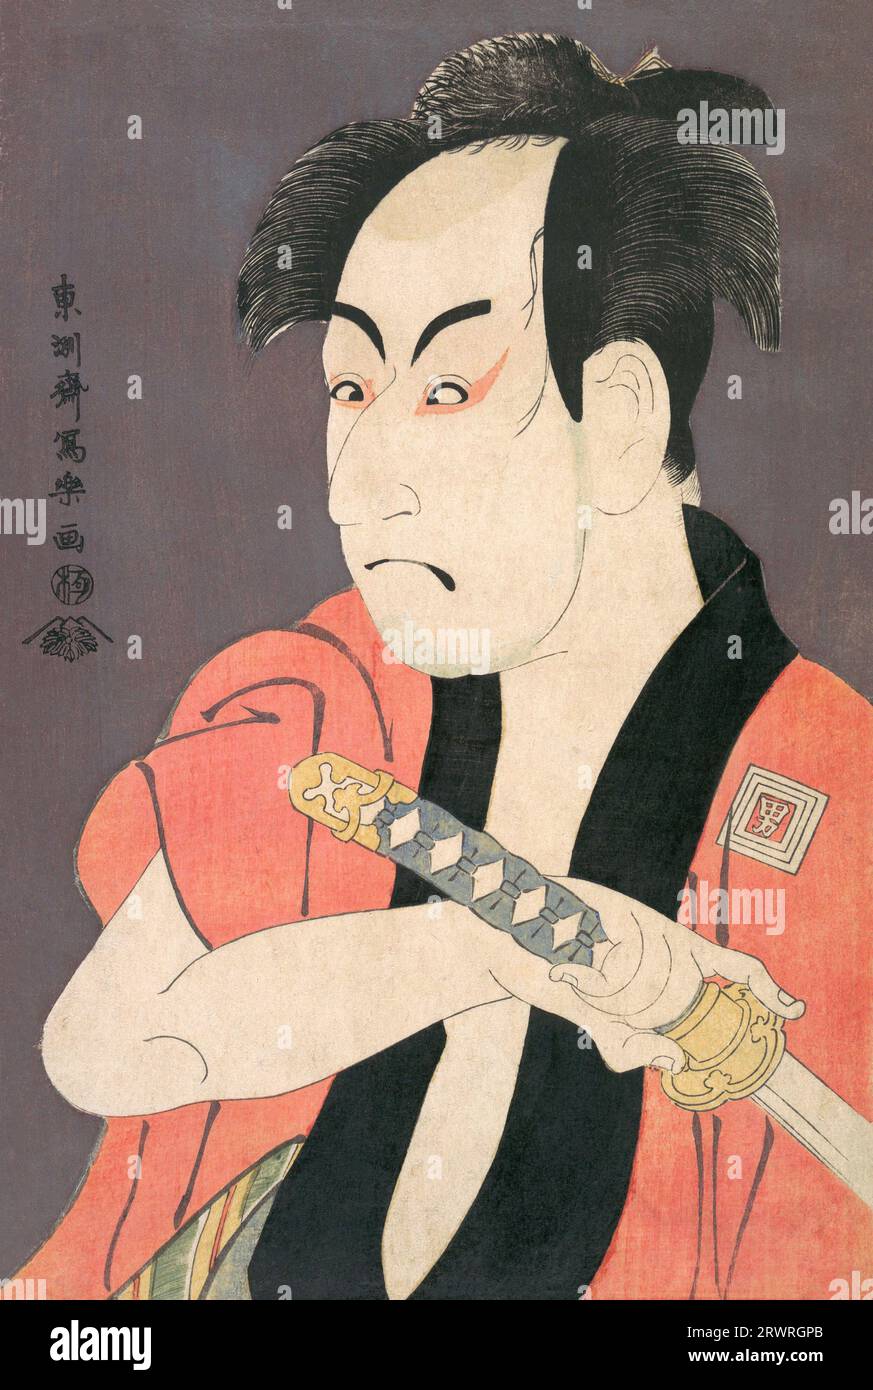 Japón: El actor de Kabuki Ichikawa Omezou en el papel de Yakko Ippei. Grabado en madera Ukiyo-e por Toshusai Sharaku (1770 - 1825), c. 1794. Tōshūsai Sharaku es ampliamente considerado como uno de los grandes maestros de la impresión en madera en Japón. Poco se sabe de él, además de sus huellas ukiyo-e; ni su verdadero nombre ni las fechas de su nacimiento o muerte se conocen con certeza. Su carrera activa como artista de madera parece haber abarcado solo diez meses en el período Edo de mediados de la historia japonesa, desde mediados de 1794 hasta principios de 1795. Foto de stock